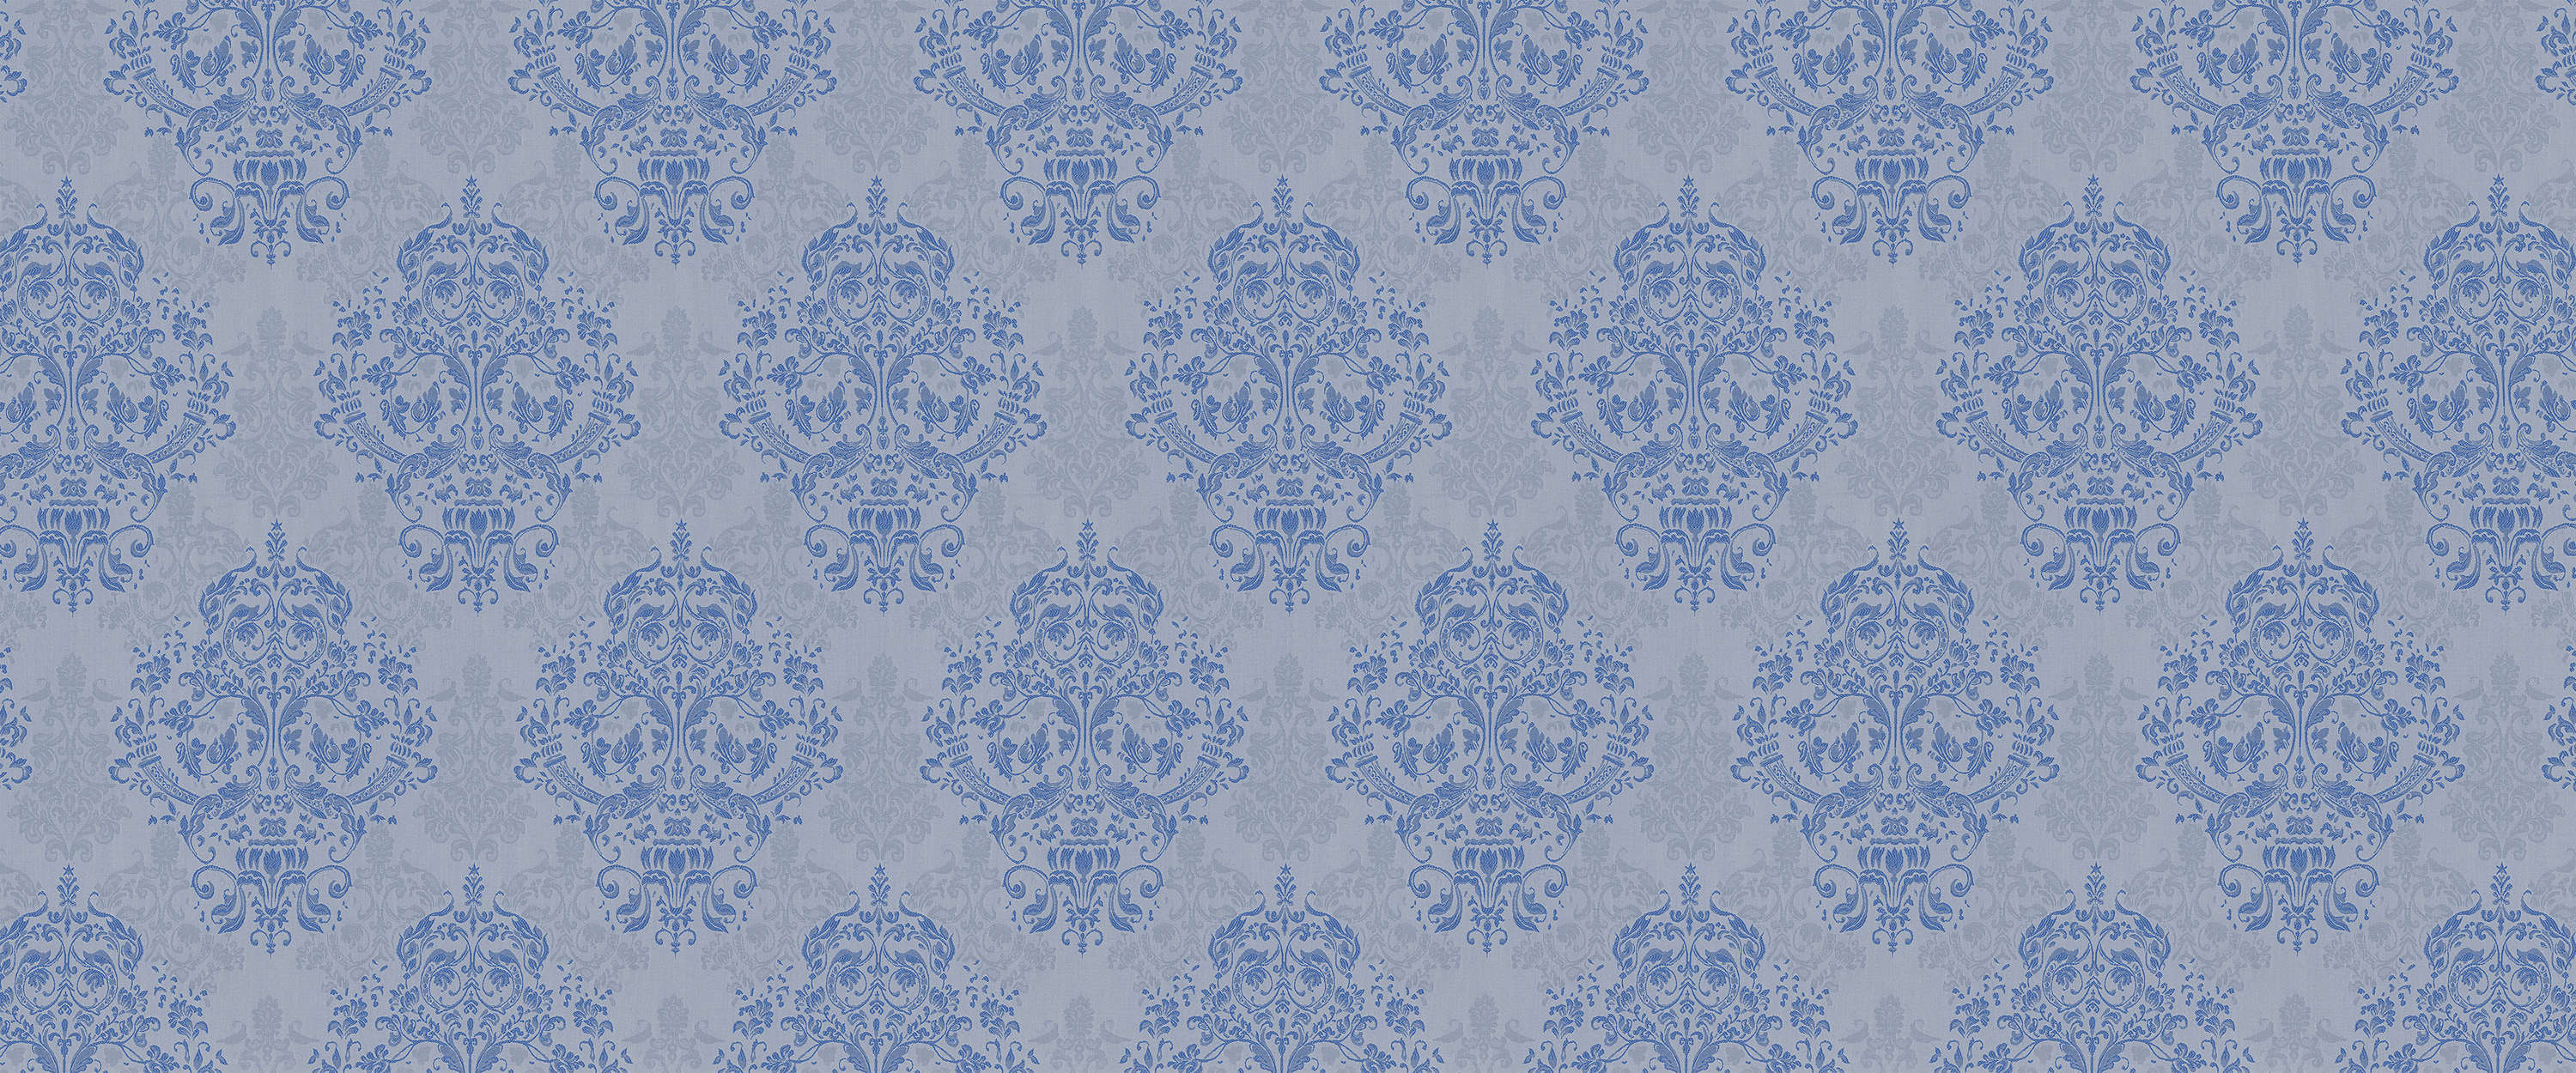             Papier peint panoramique baroque bleu & gris avec design ornemental
        